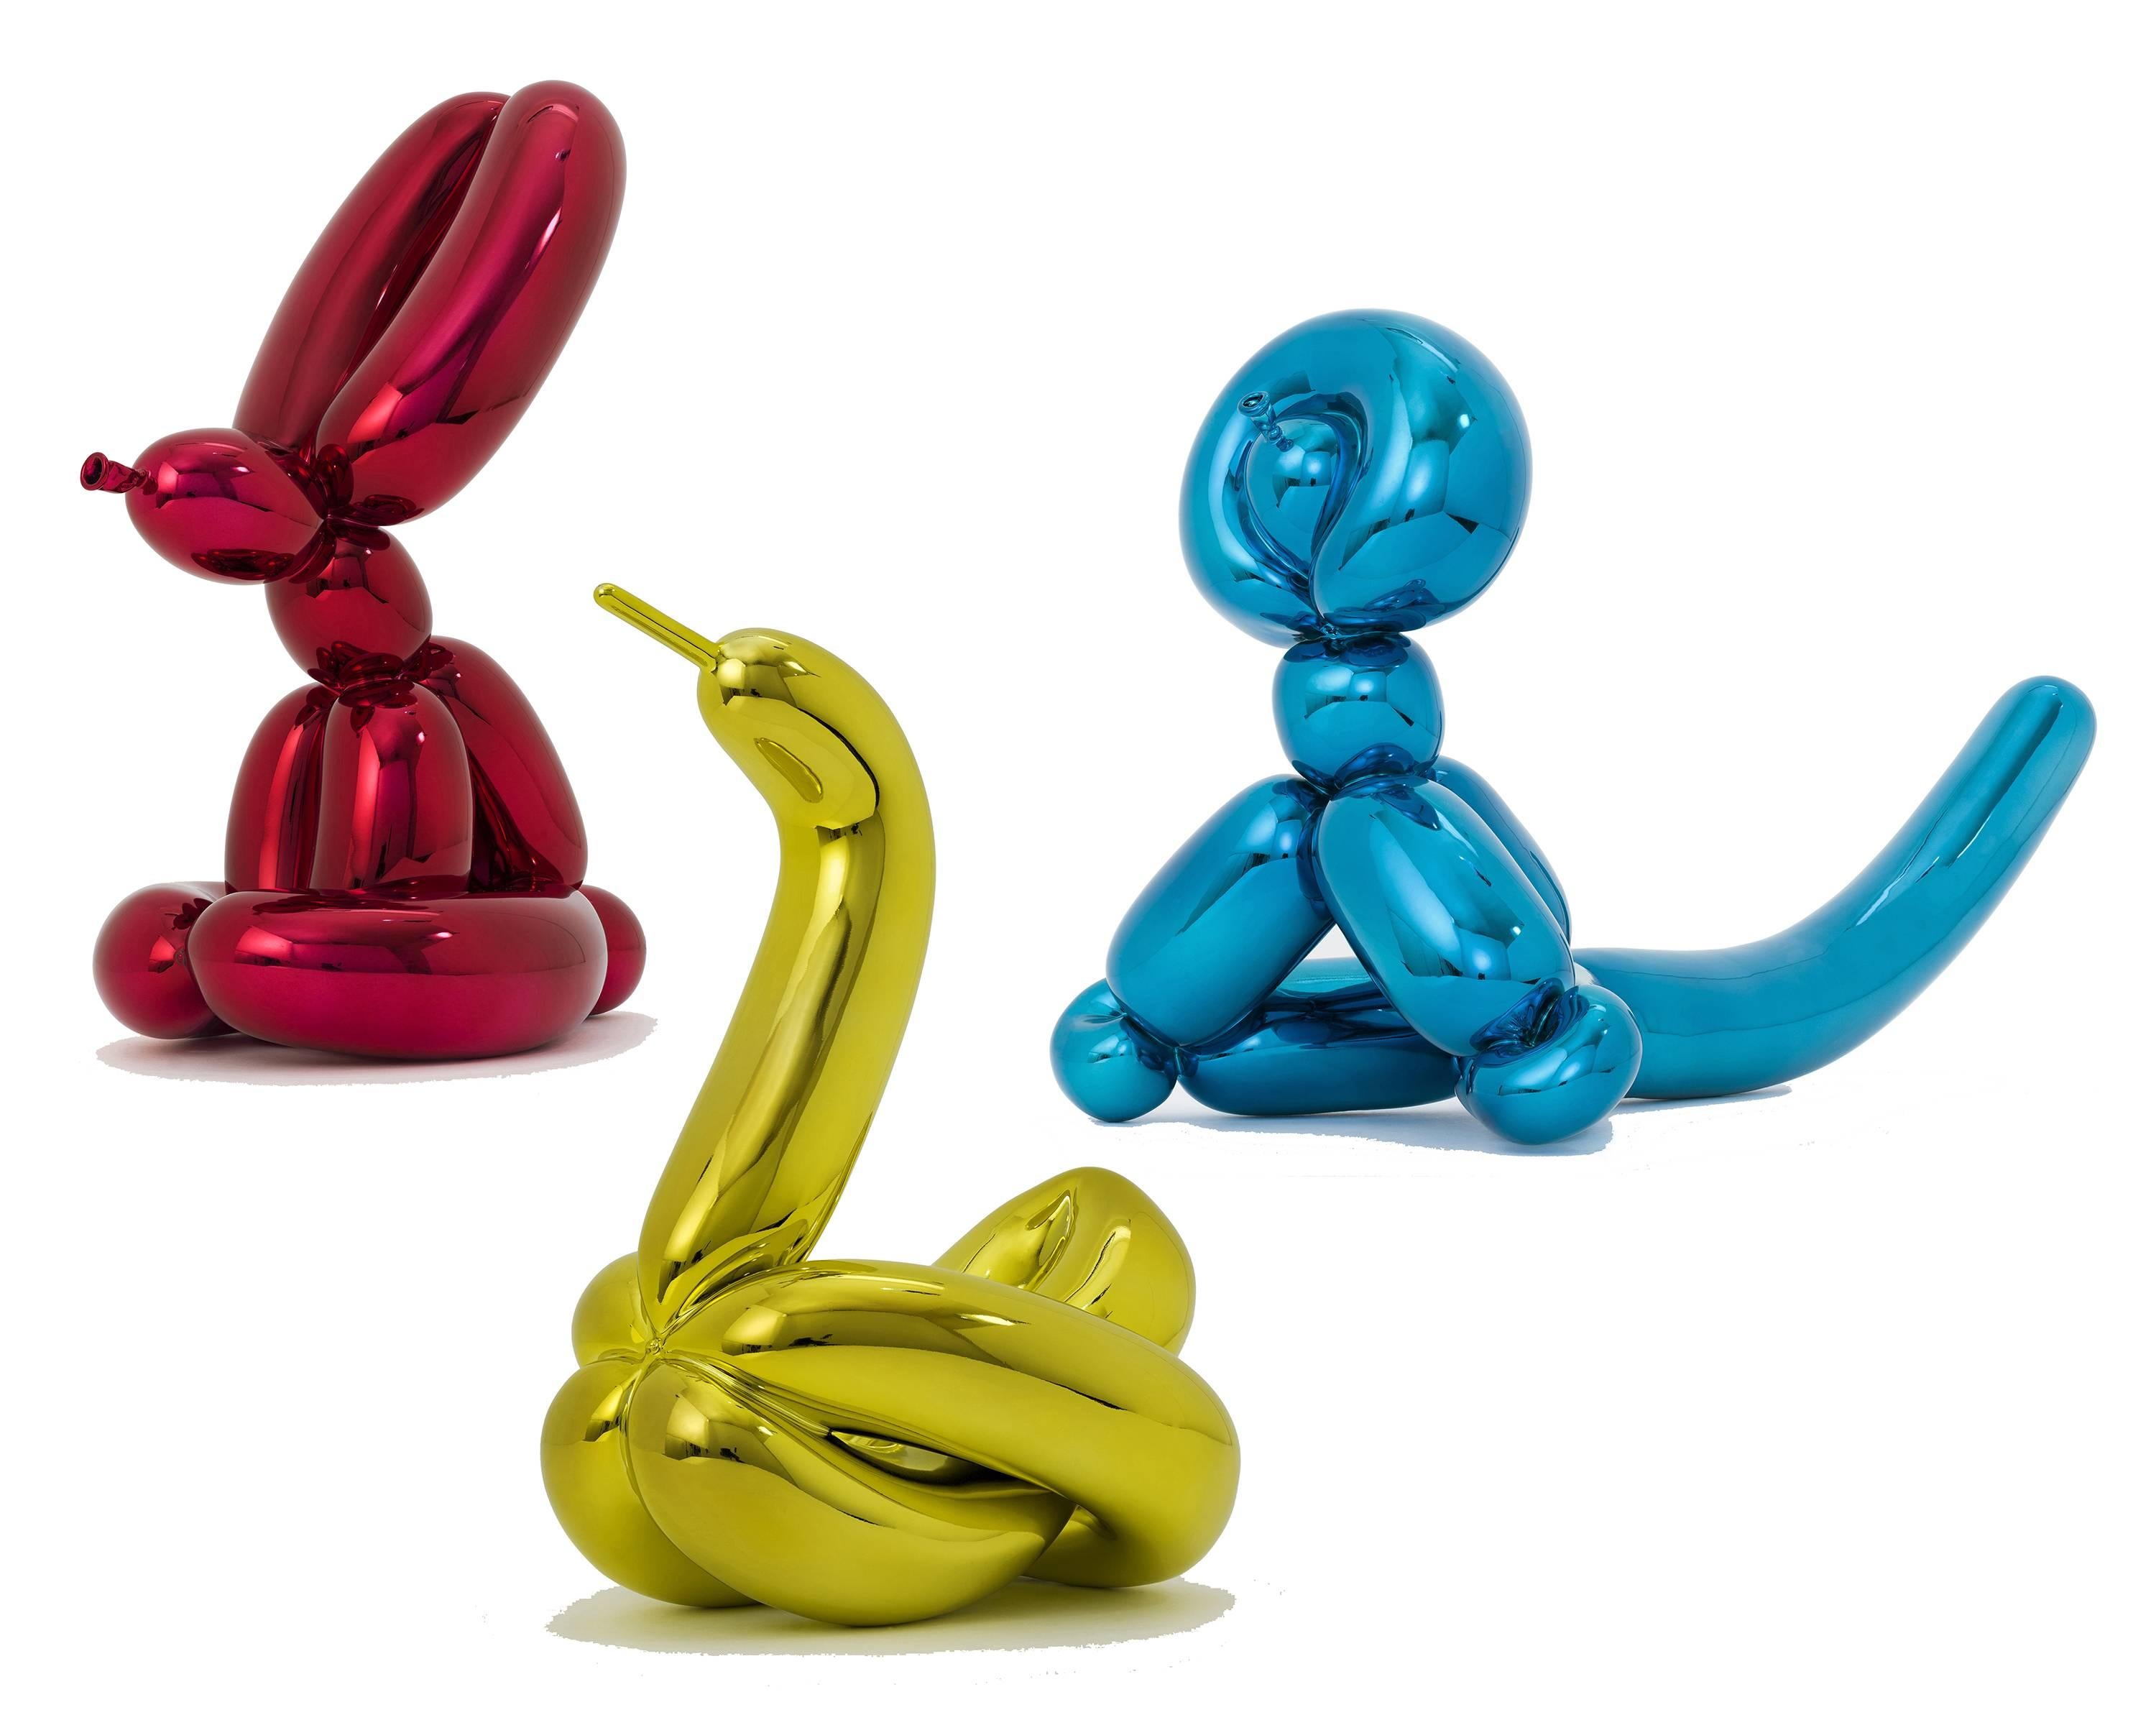 Jeff Koons Figurative Sculpture - Balloon Rabbit, Balloon Swan, Balloon Monkey